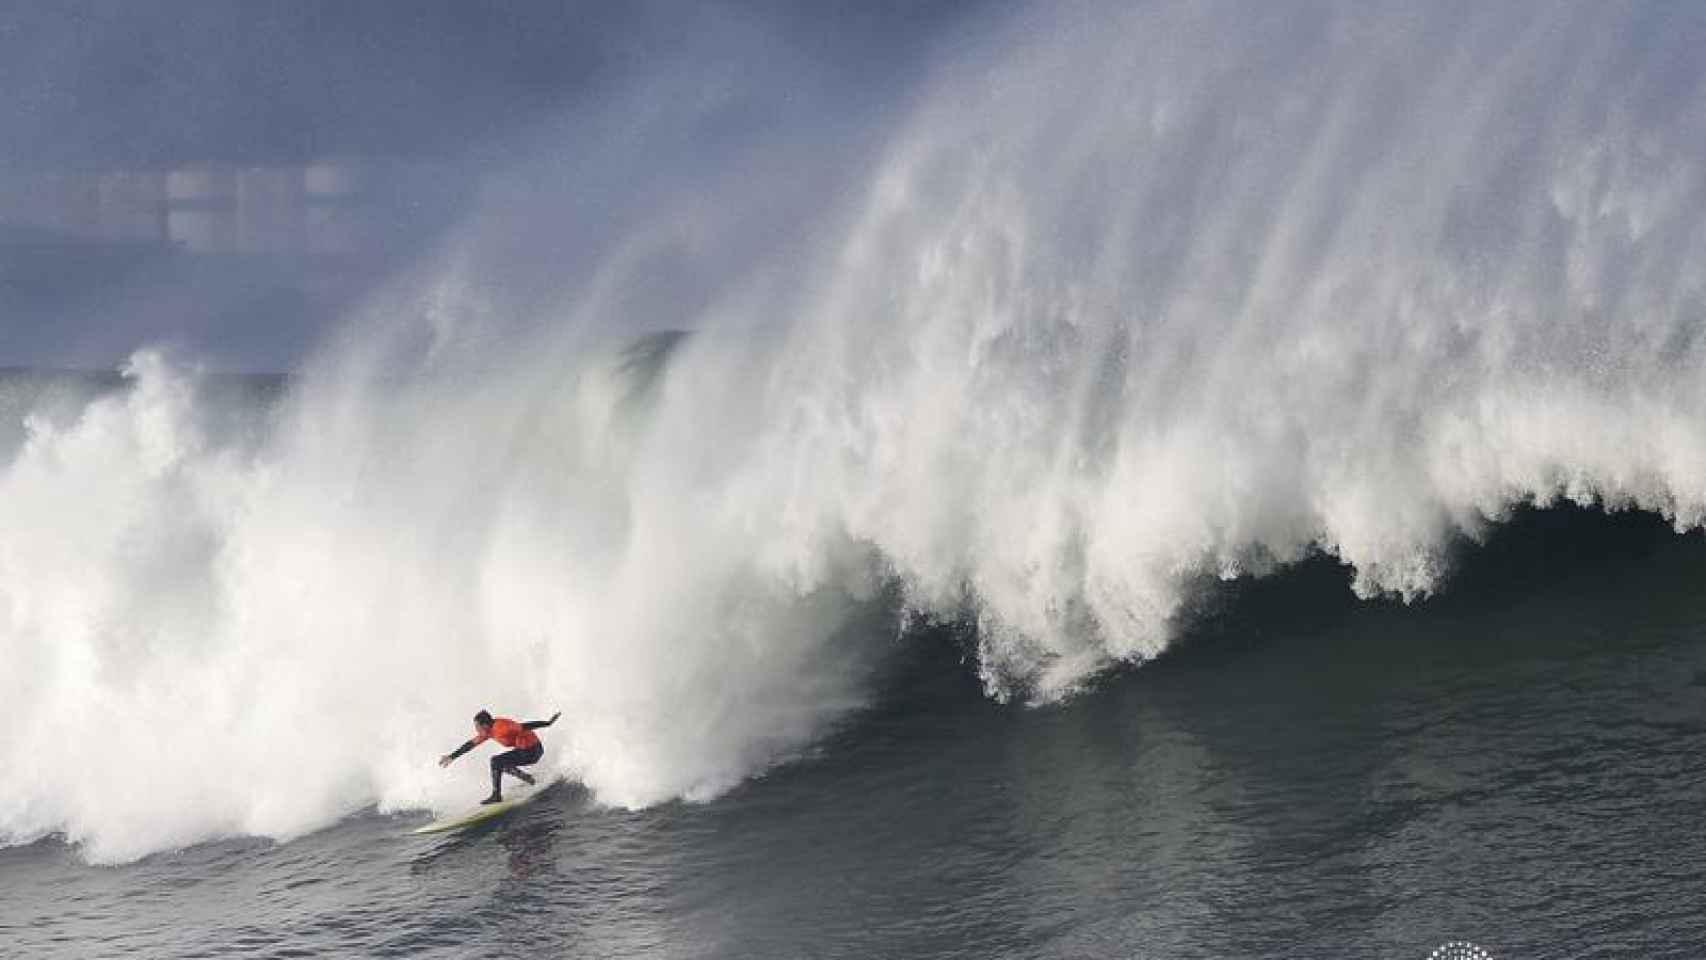 Imagen de un surfista cabalgando las olas, no el protagonista de la noticia